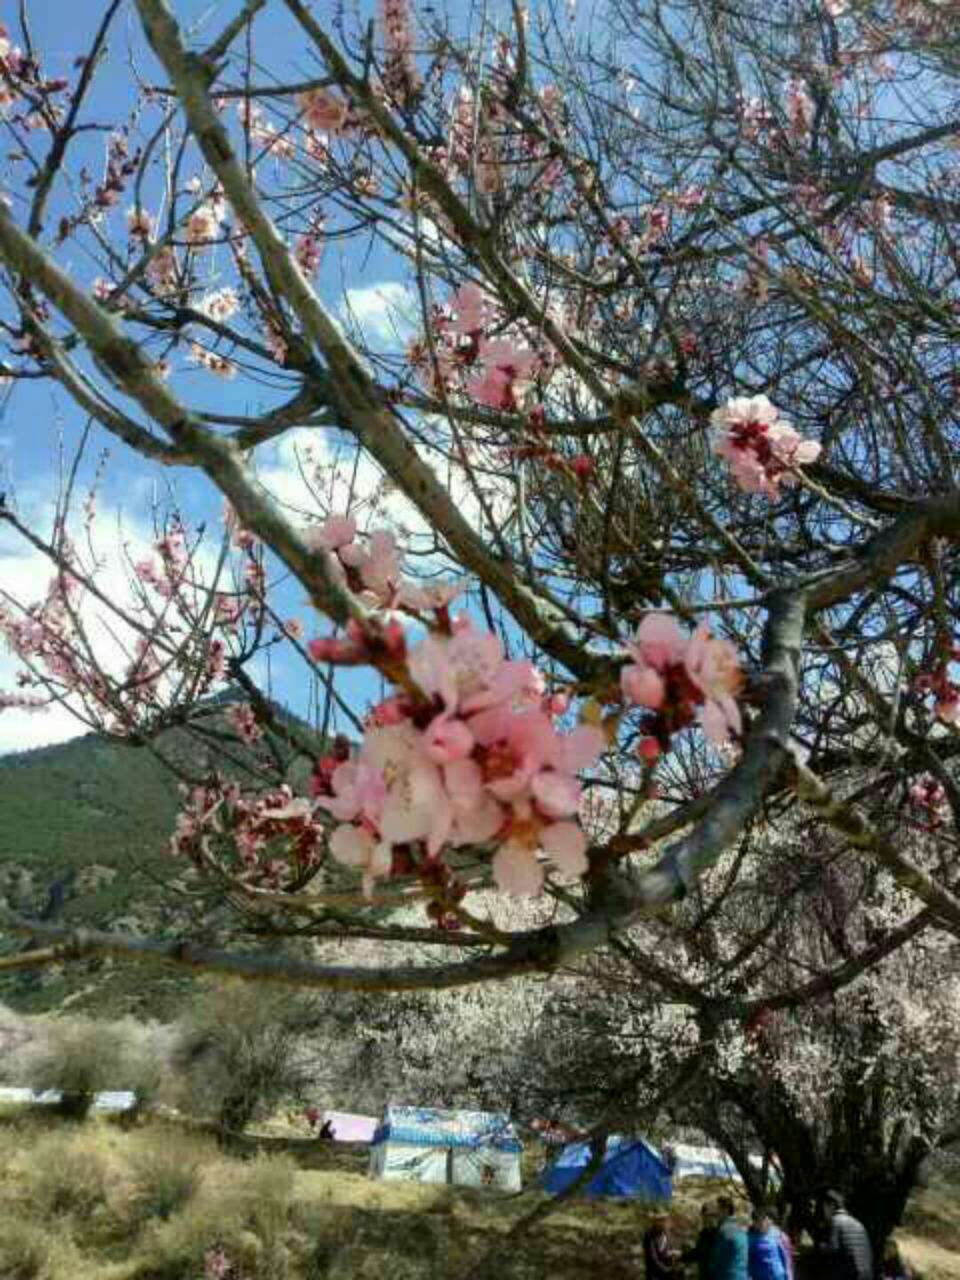 阳春三月川藏线一幅春色盎 然的景象，冰川雪山下林芝各色桃花漫山开放，等